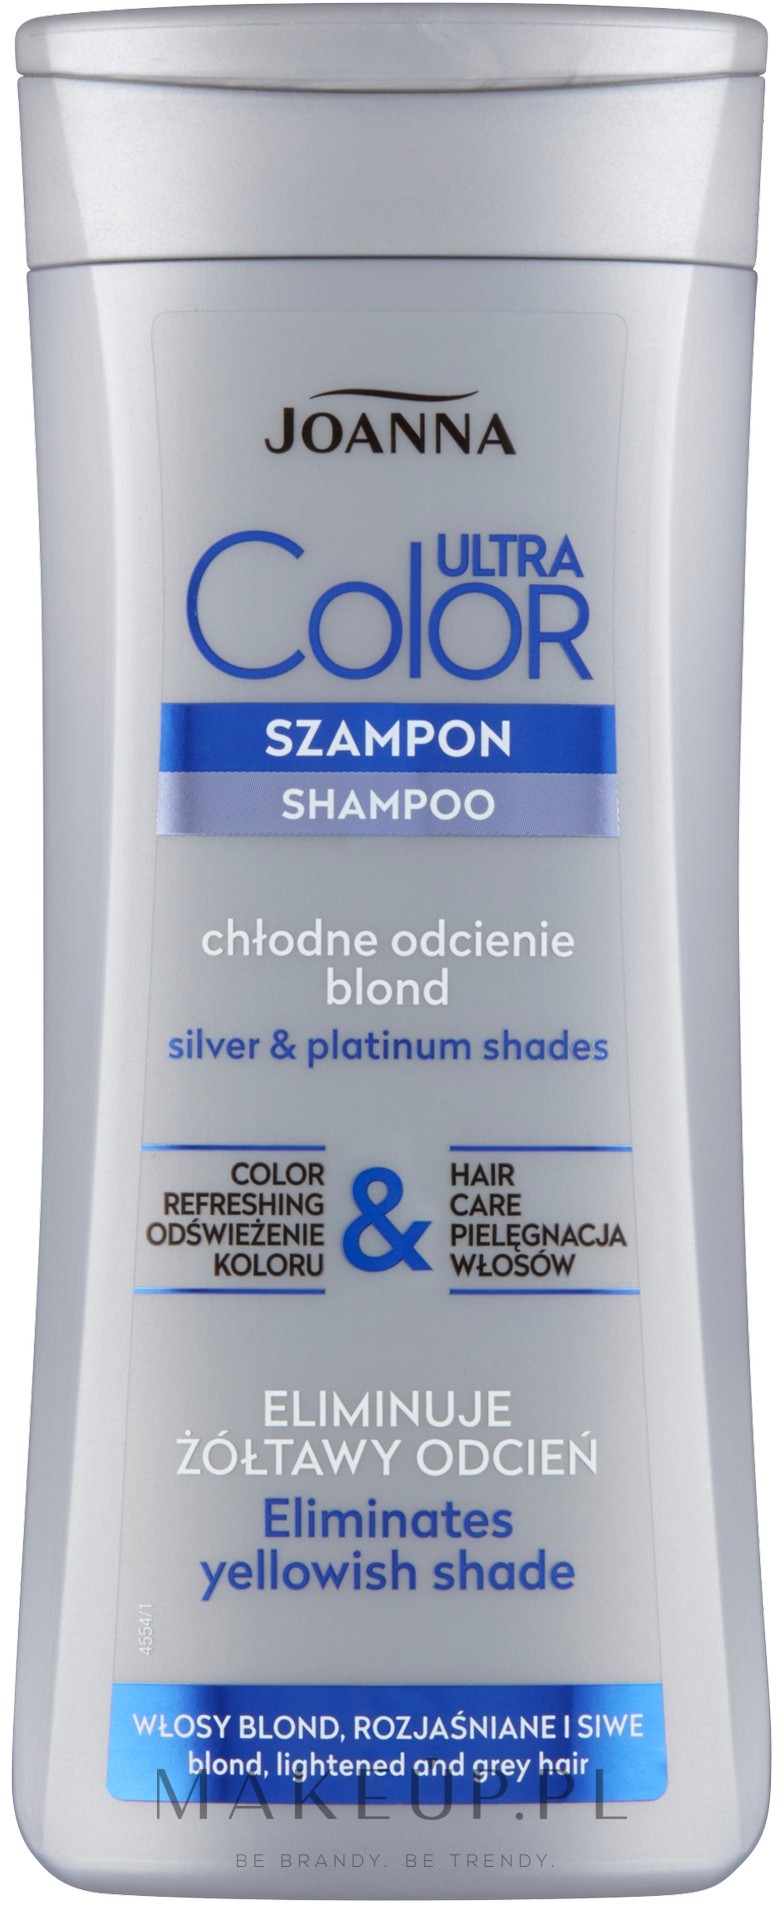 joanna szampon do włosów siwych